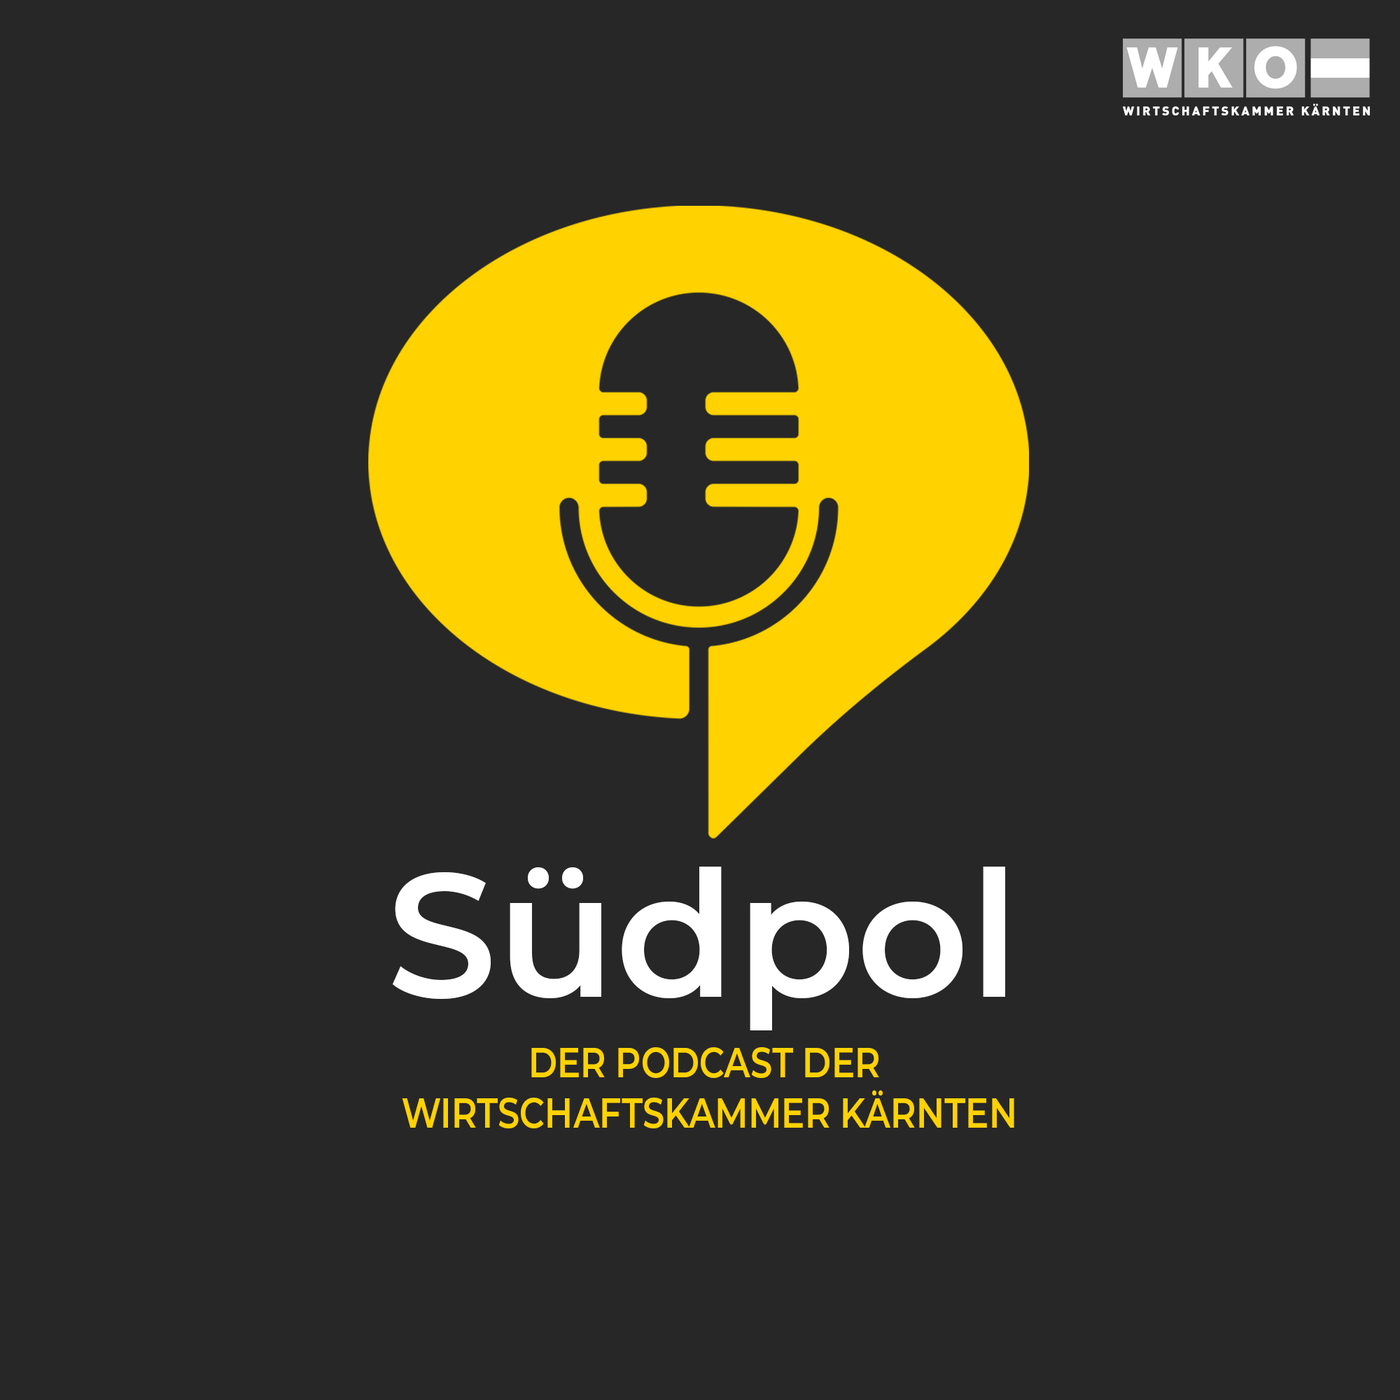 SÜDPOL - Episode 15: Kärnten und die Steiermark wachsen zusammen